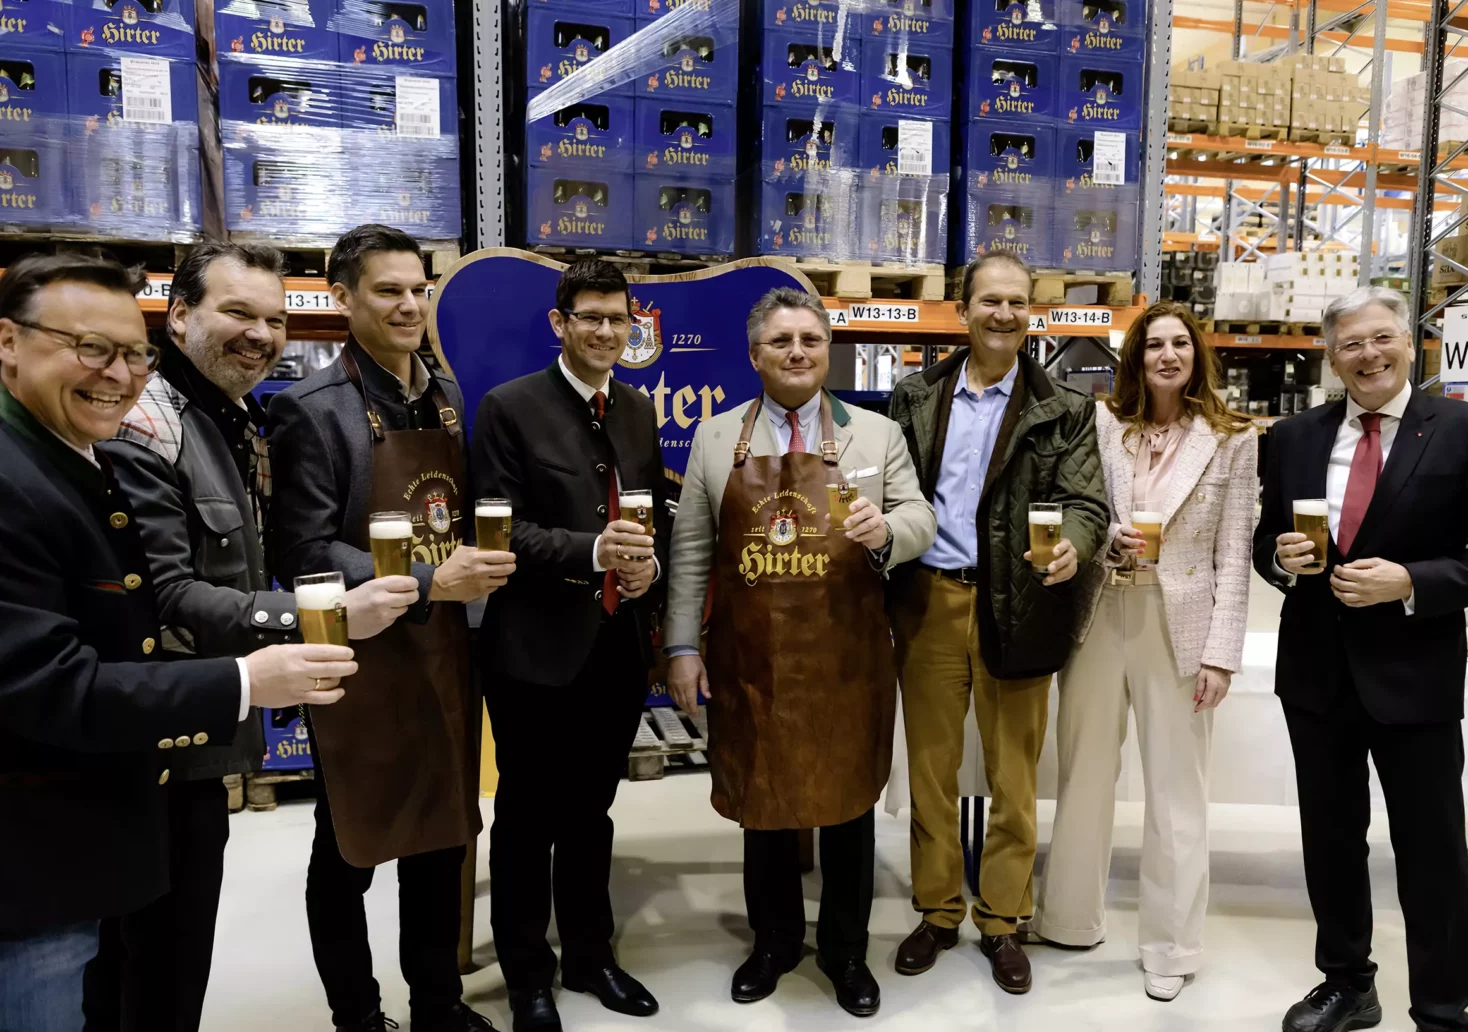 Das Bild auf 5min.at zeigt eine Gruppe von Menschen mit Bier bei der Eröffnung einer neuen Lagerhalle.